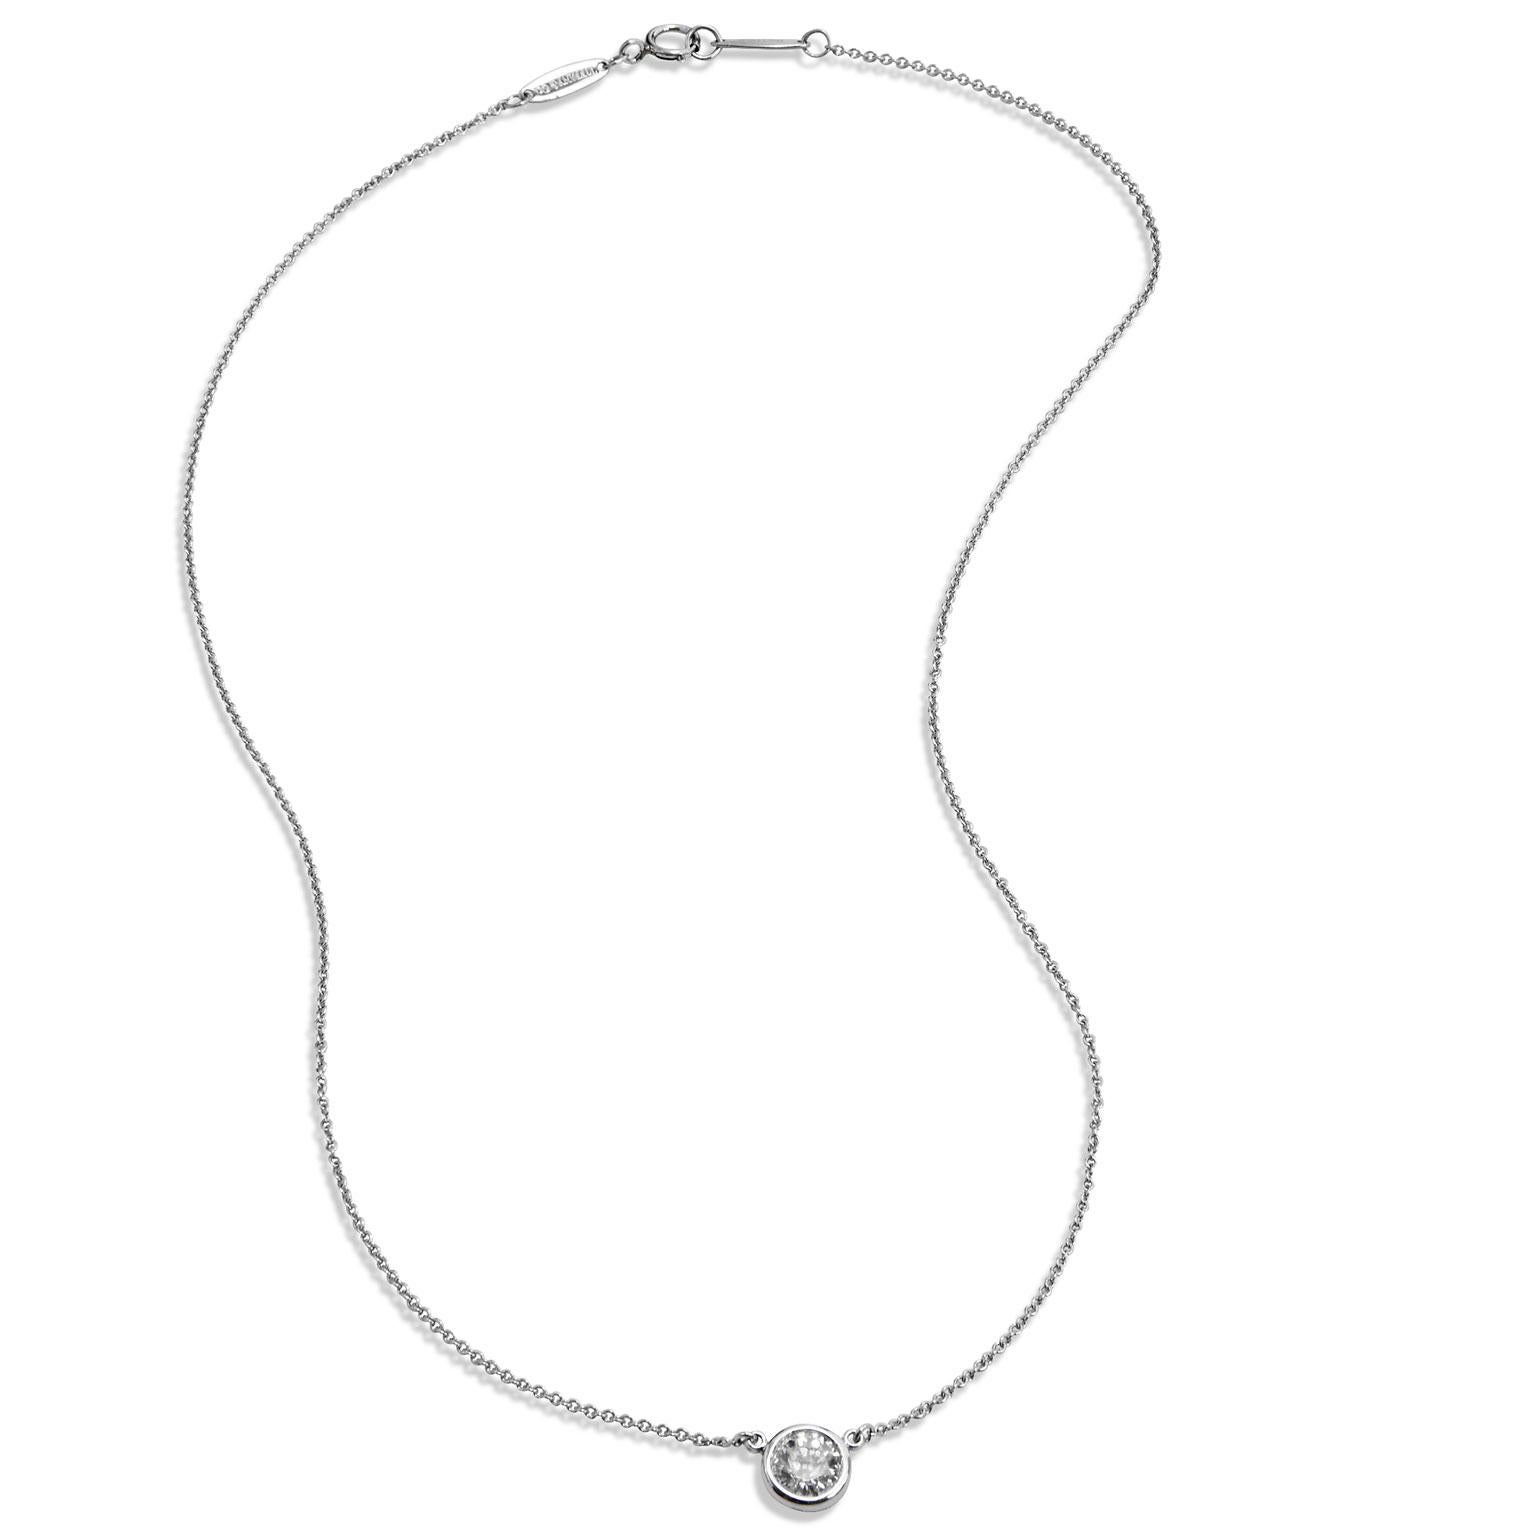 Round Cut Tiffany & Co. Diamond Pendant Necklace by Elsa Peretti